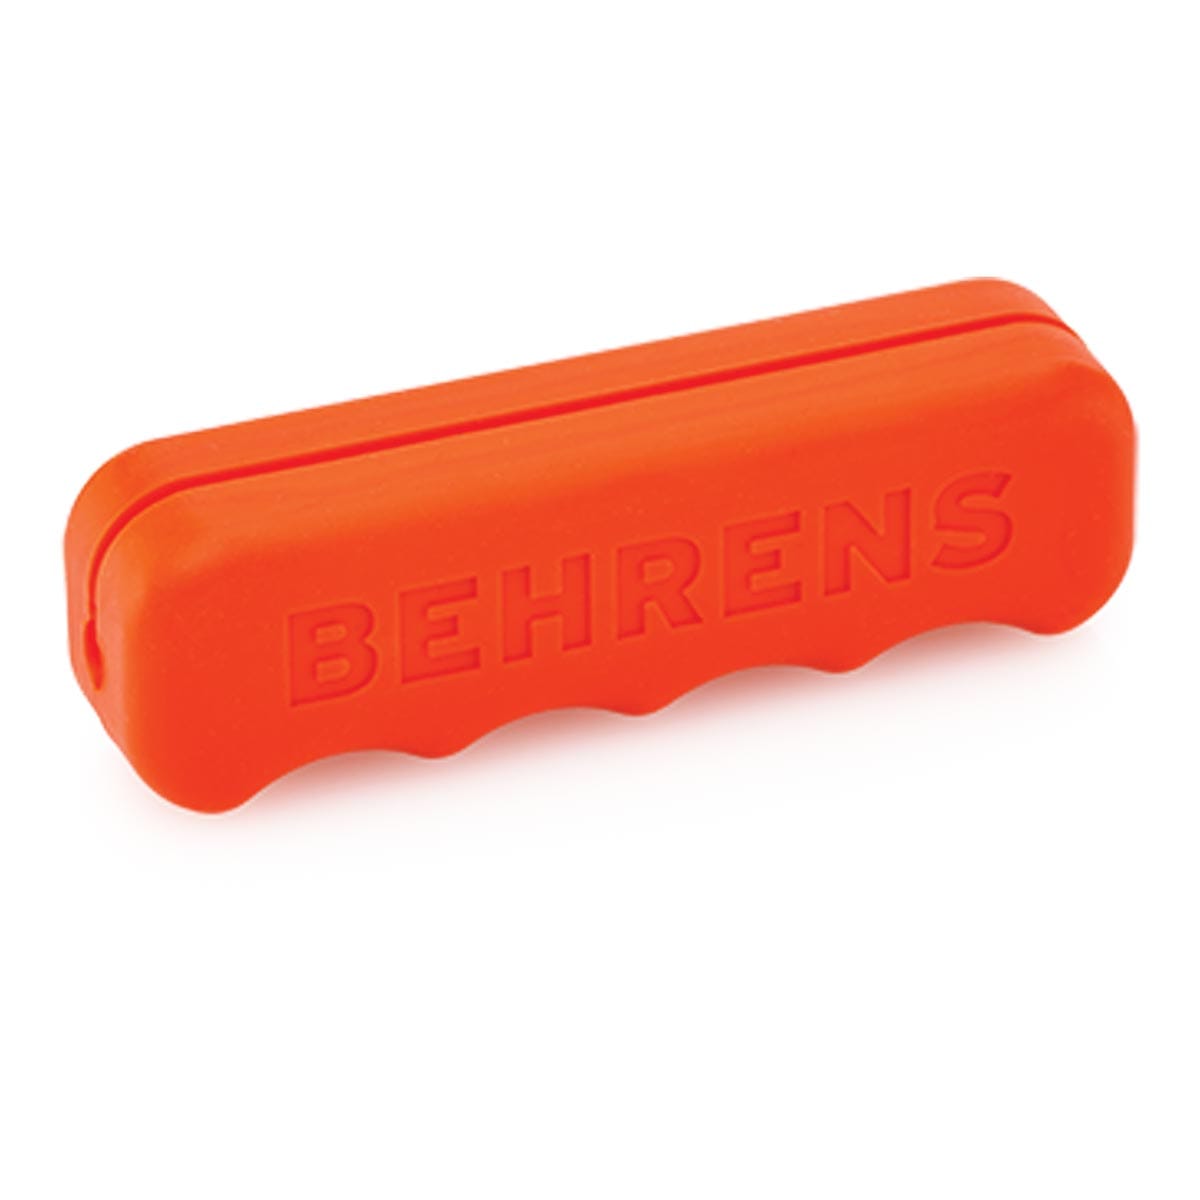 Behrens Comfort Grip Handles - 3", Orange